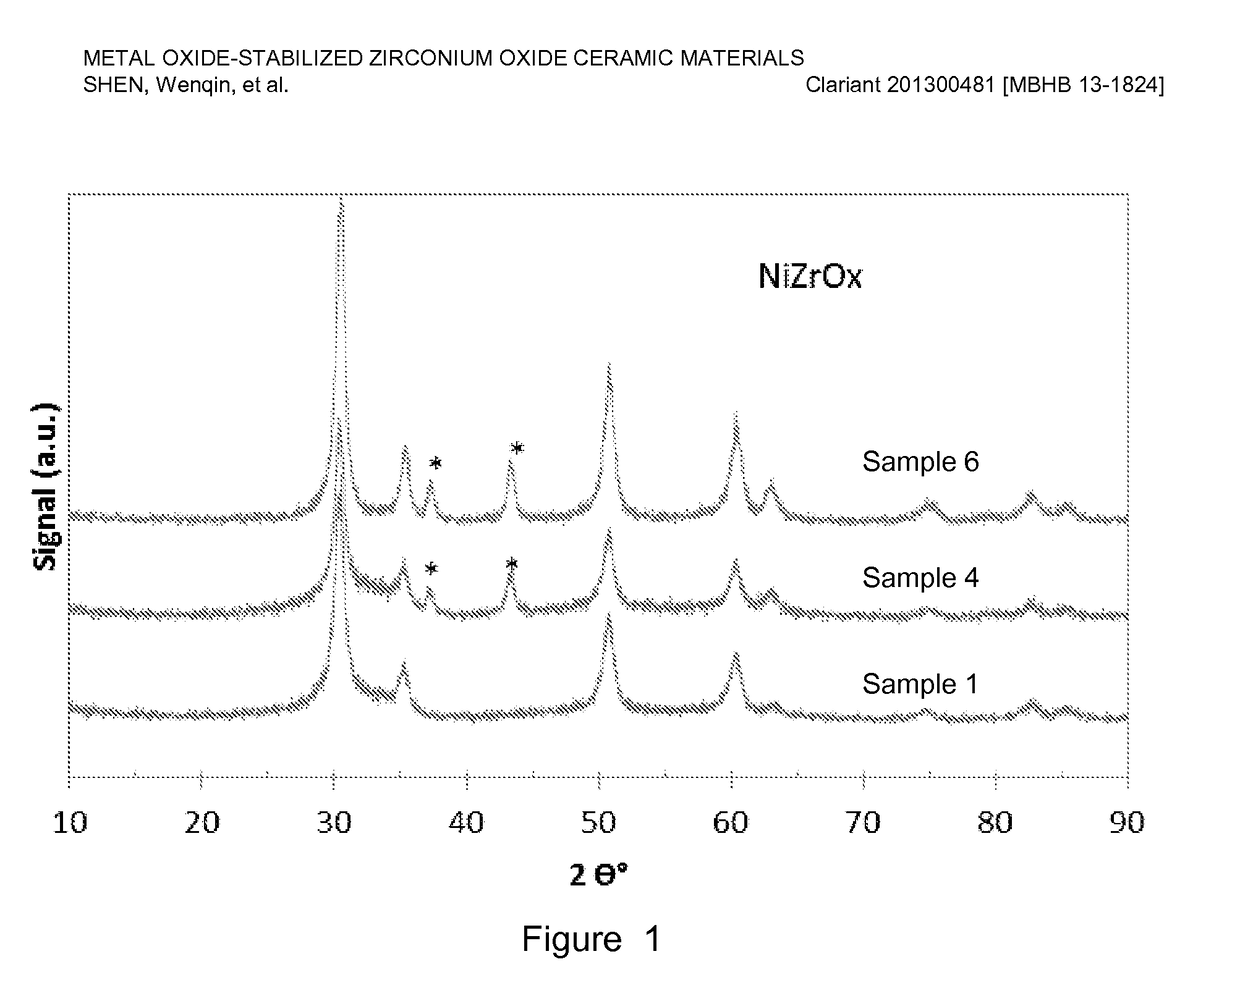 Metal Oxide-Stabilized Zirconium Oxide Ceramic Materials